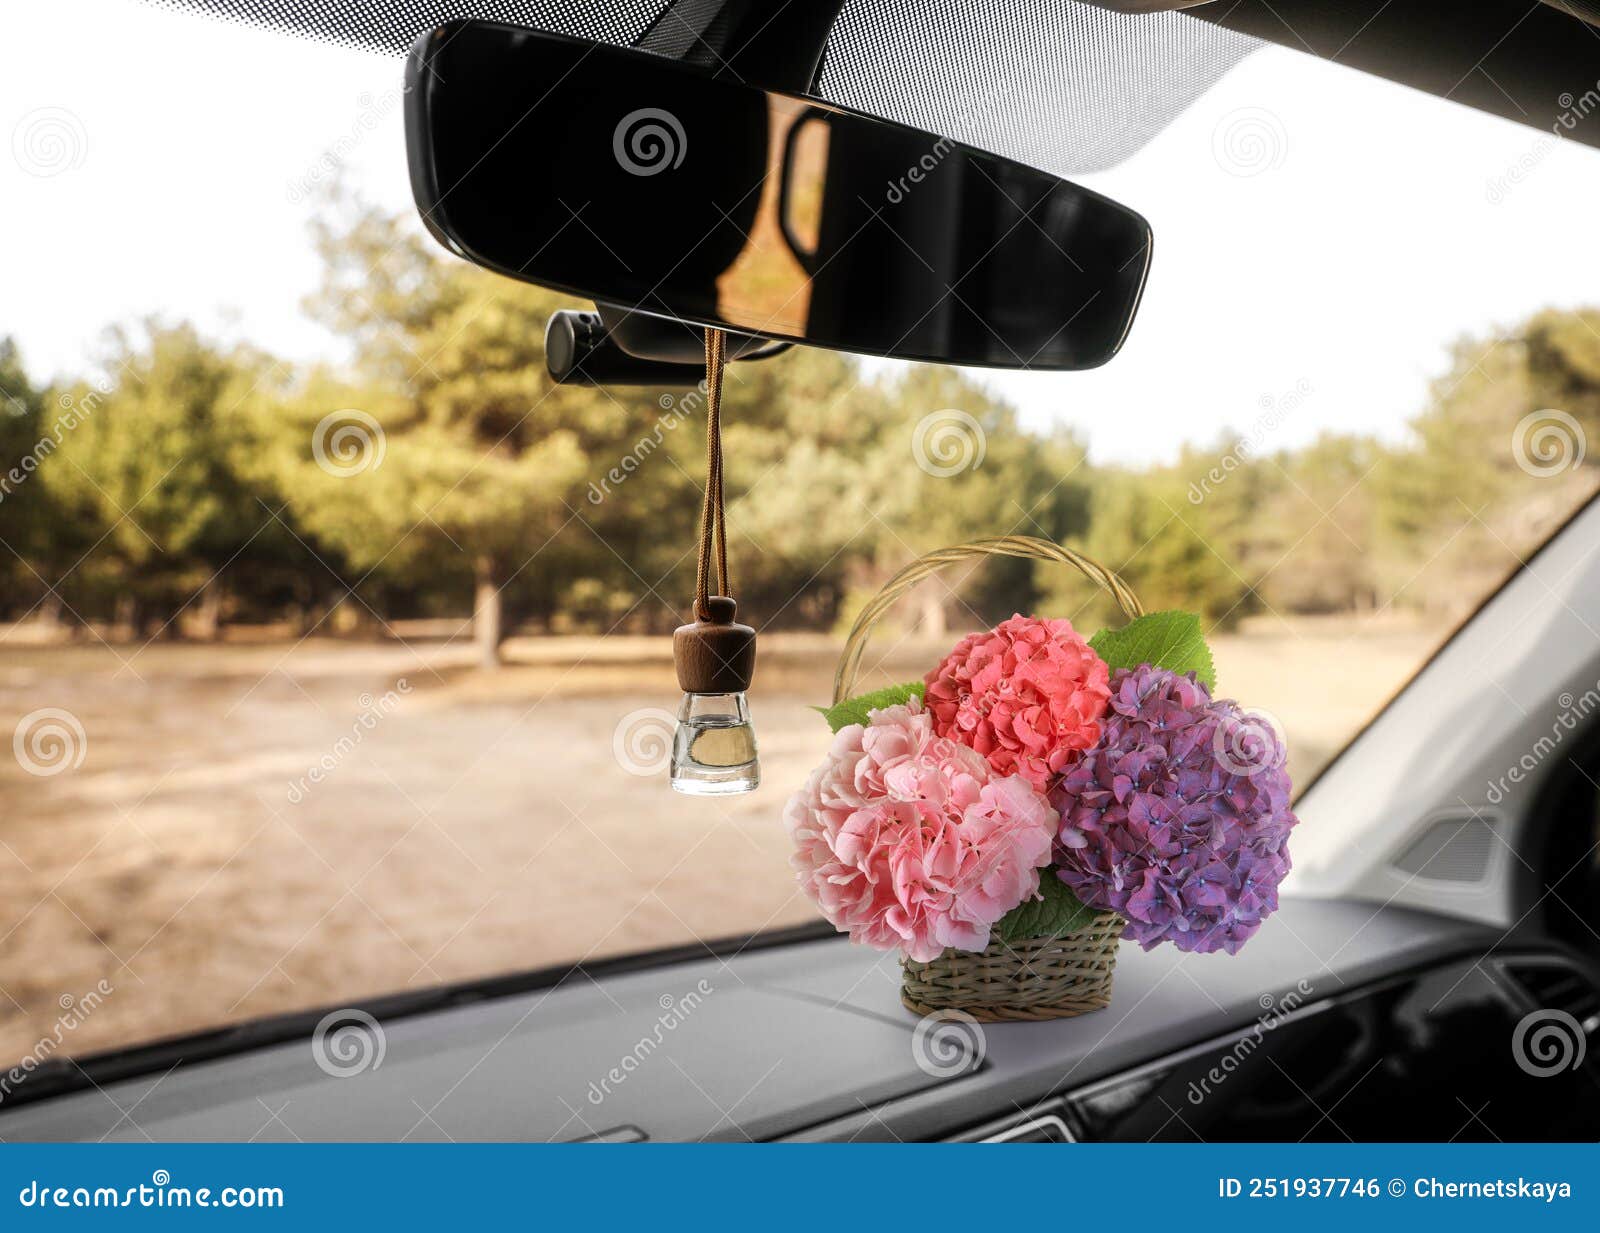 Wunderschöne Blumen Und Ein am Spiegel Hängender Lufterfrischer Im Auto  Stockfoto - Bild von spiegel, flasche: 251937746